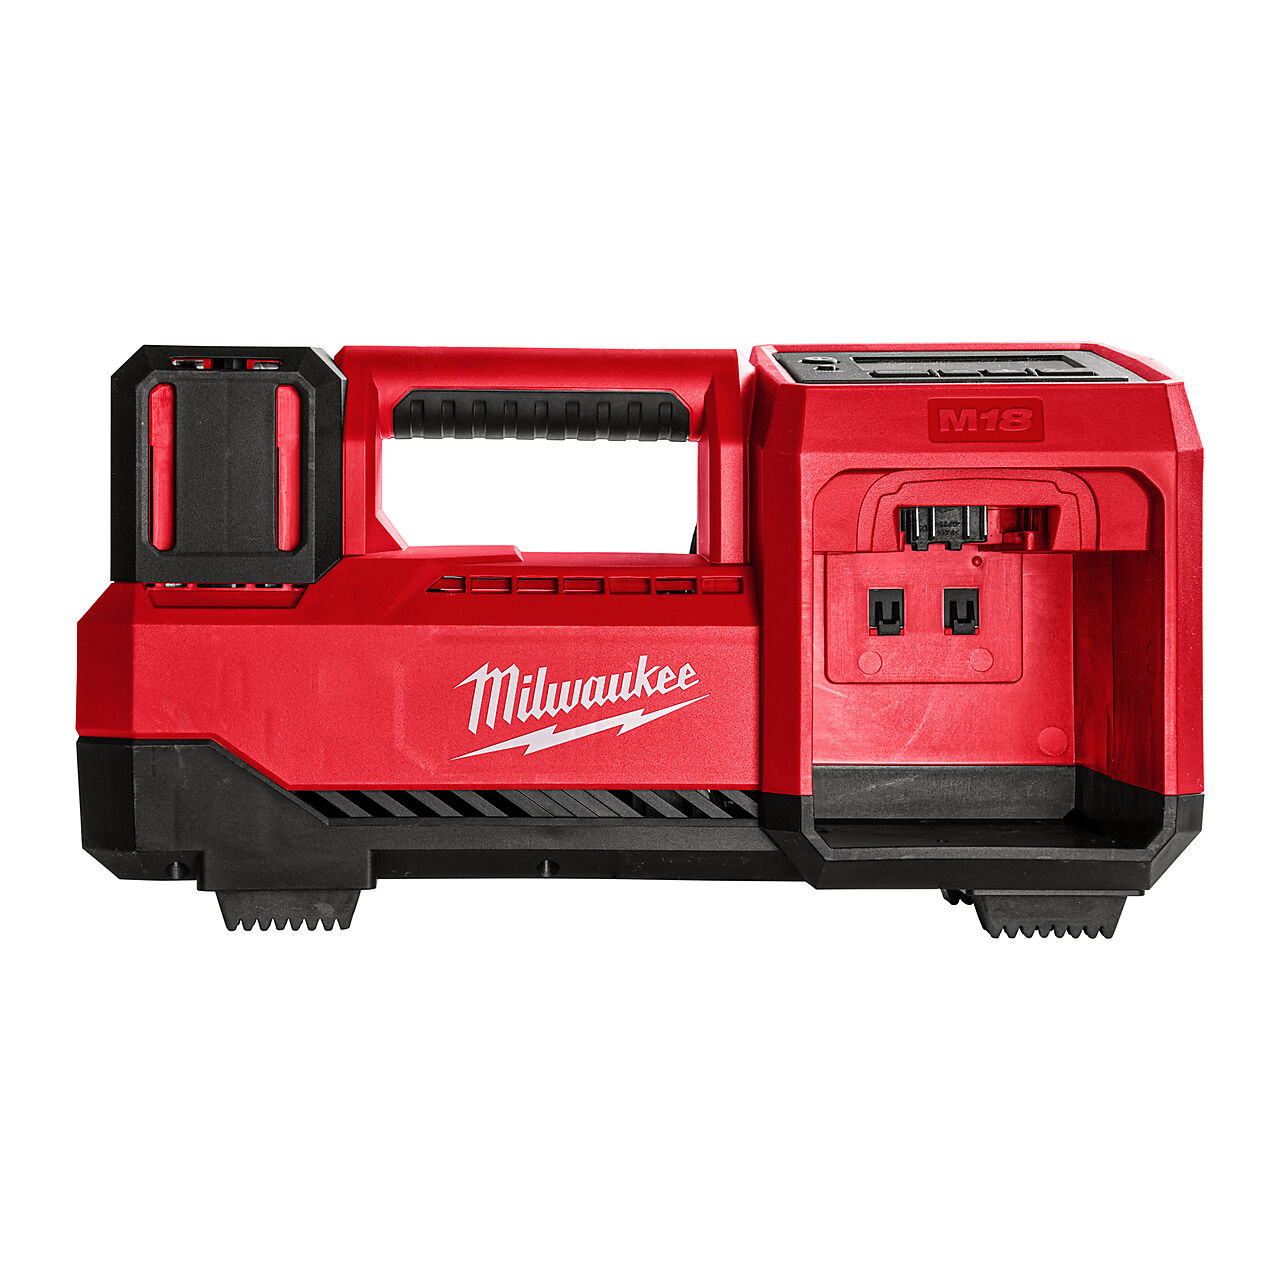 Milwaukee Milwaukee M18 kompressor BI 0 1